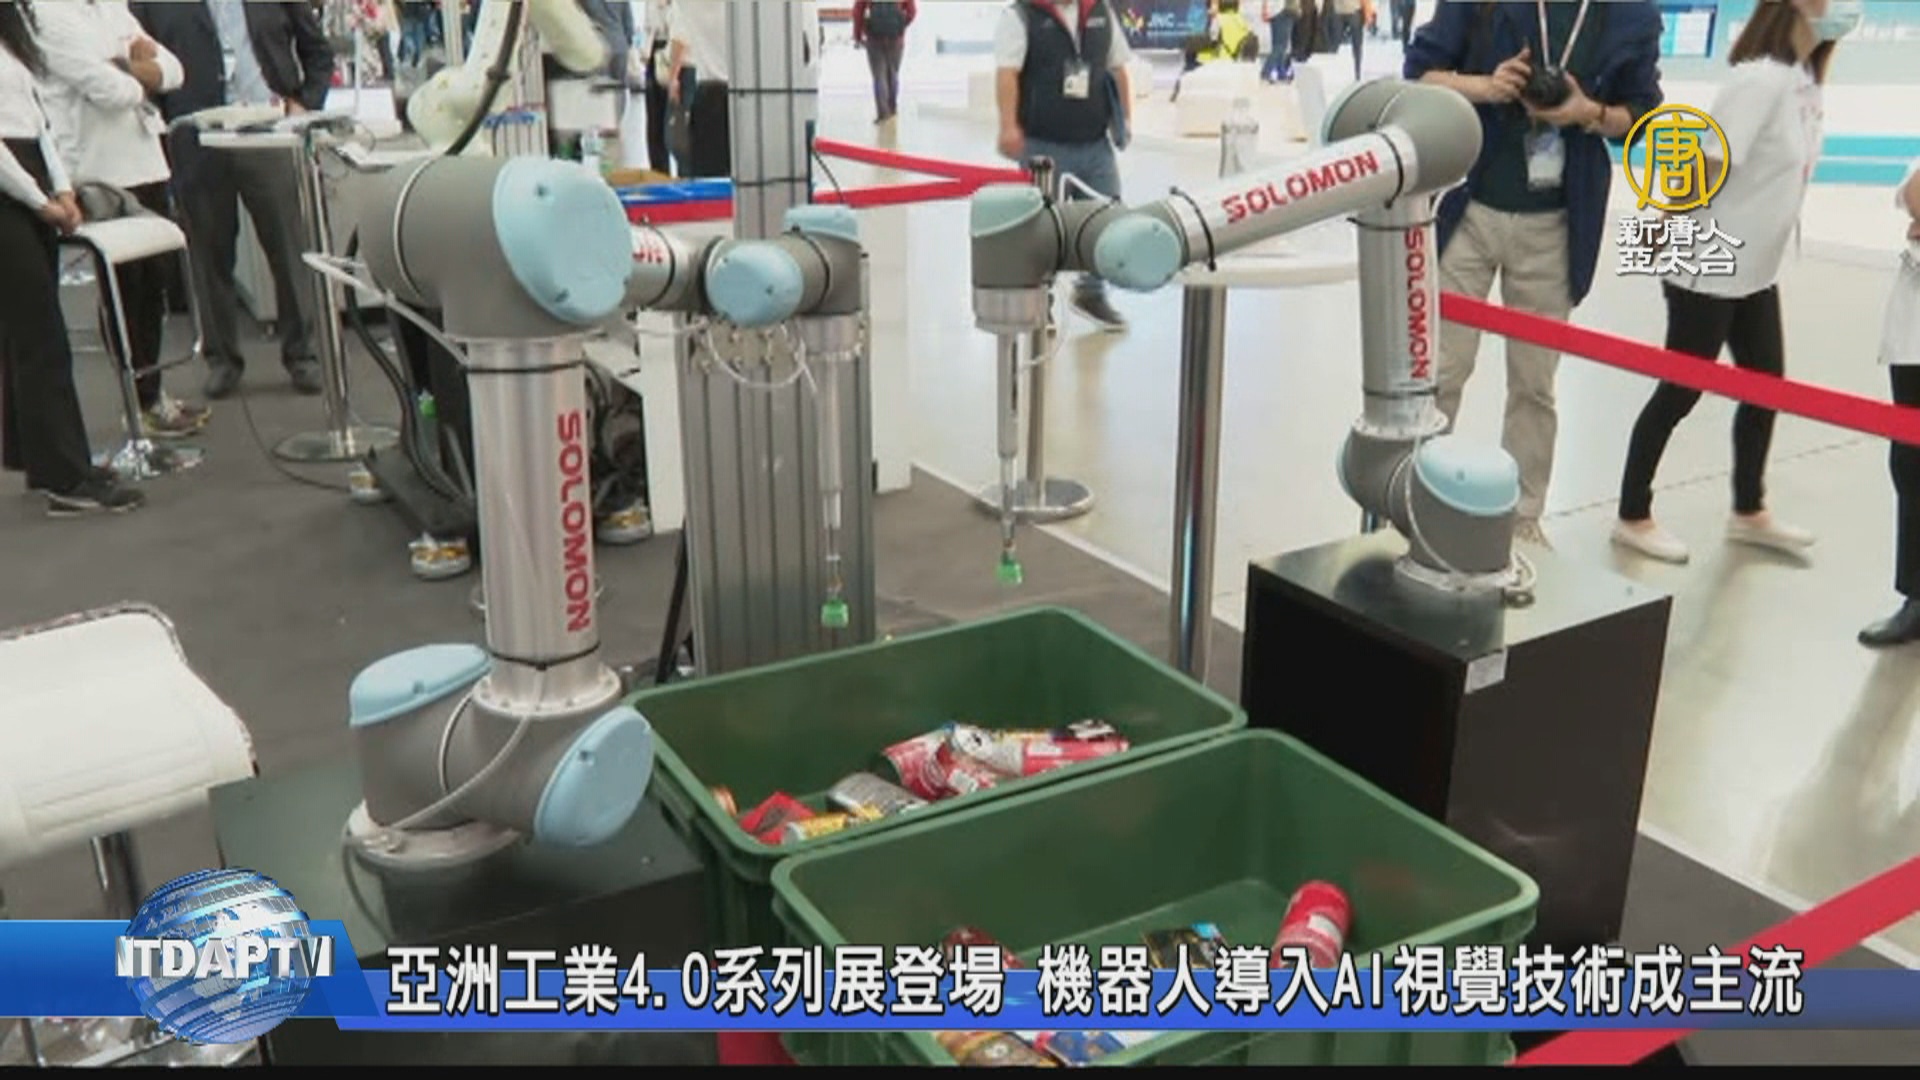 亞洲工業4.0系列展登場機器人導入AI視覺技術成主流- 新唐人亞太電視台 image